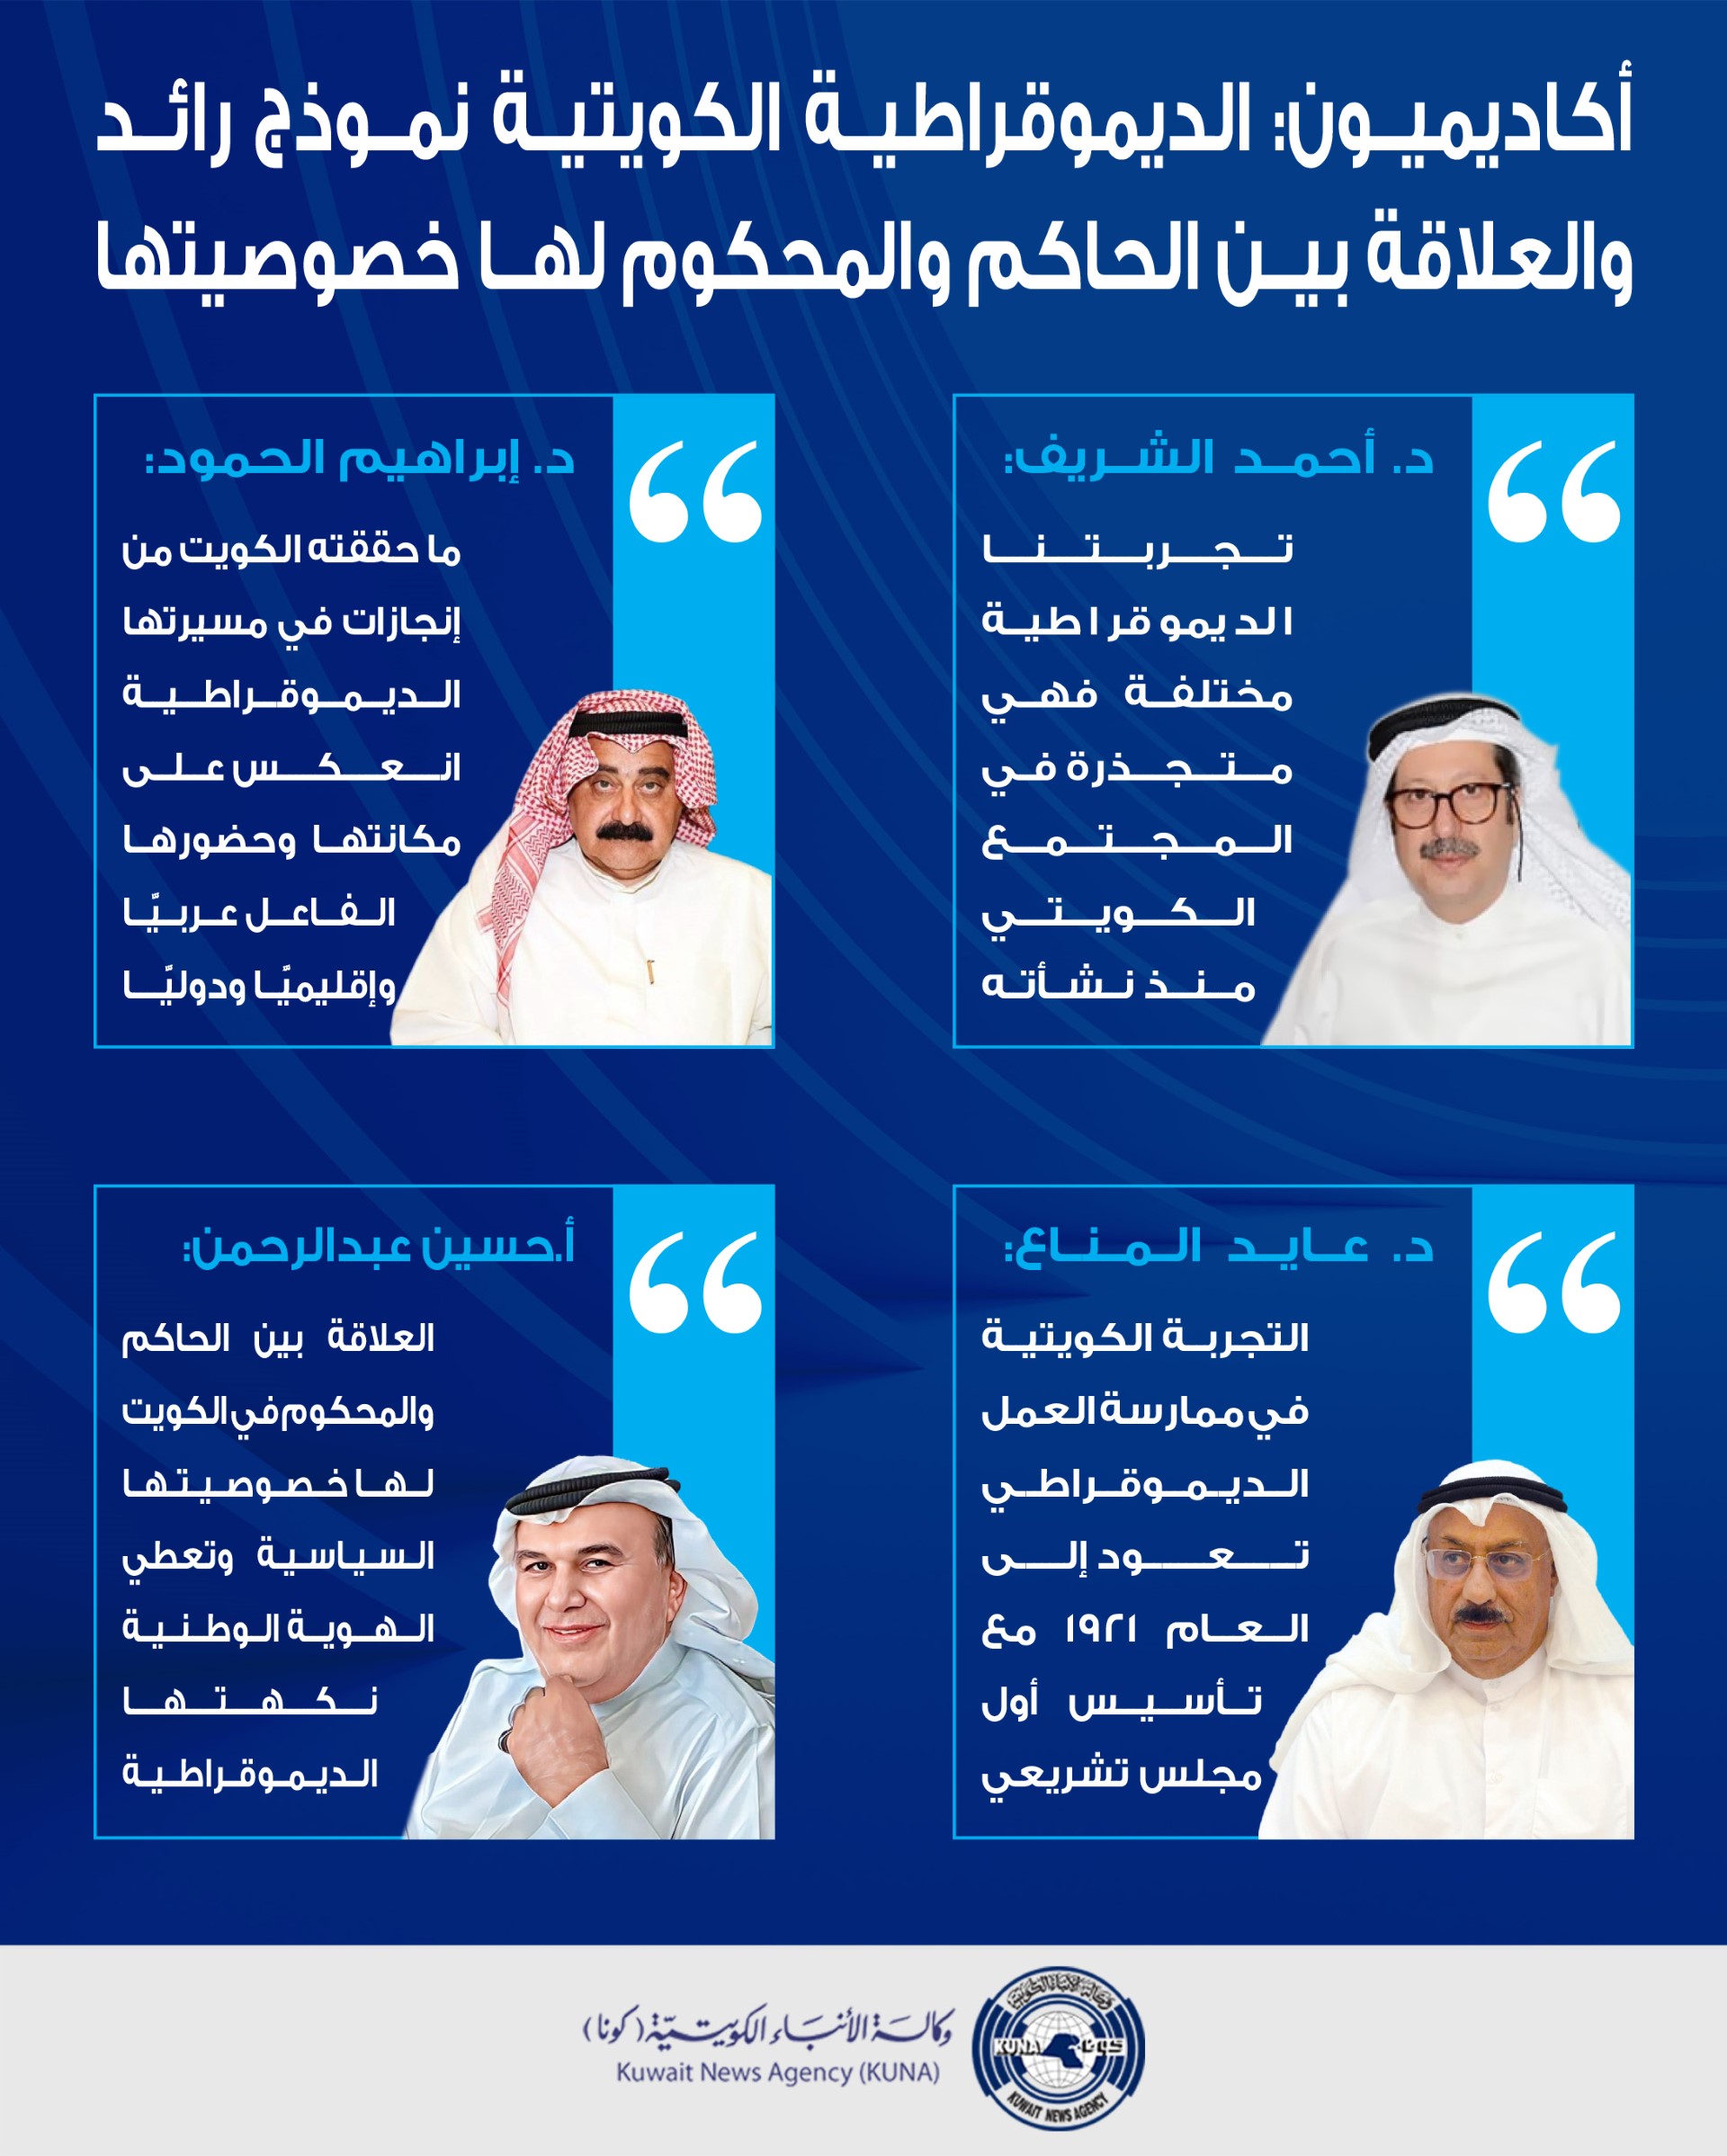 أكاديميون: الديمقراطية الكويتية نموذج رائد ومتقدم يعزز المشاركة السياسية بين الحاكم والمحكوم                                                                                                                                                              